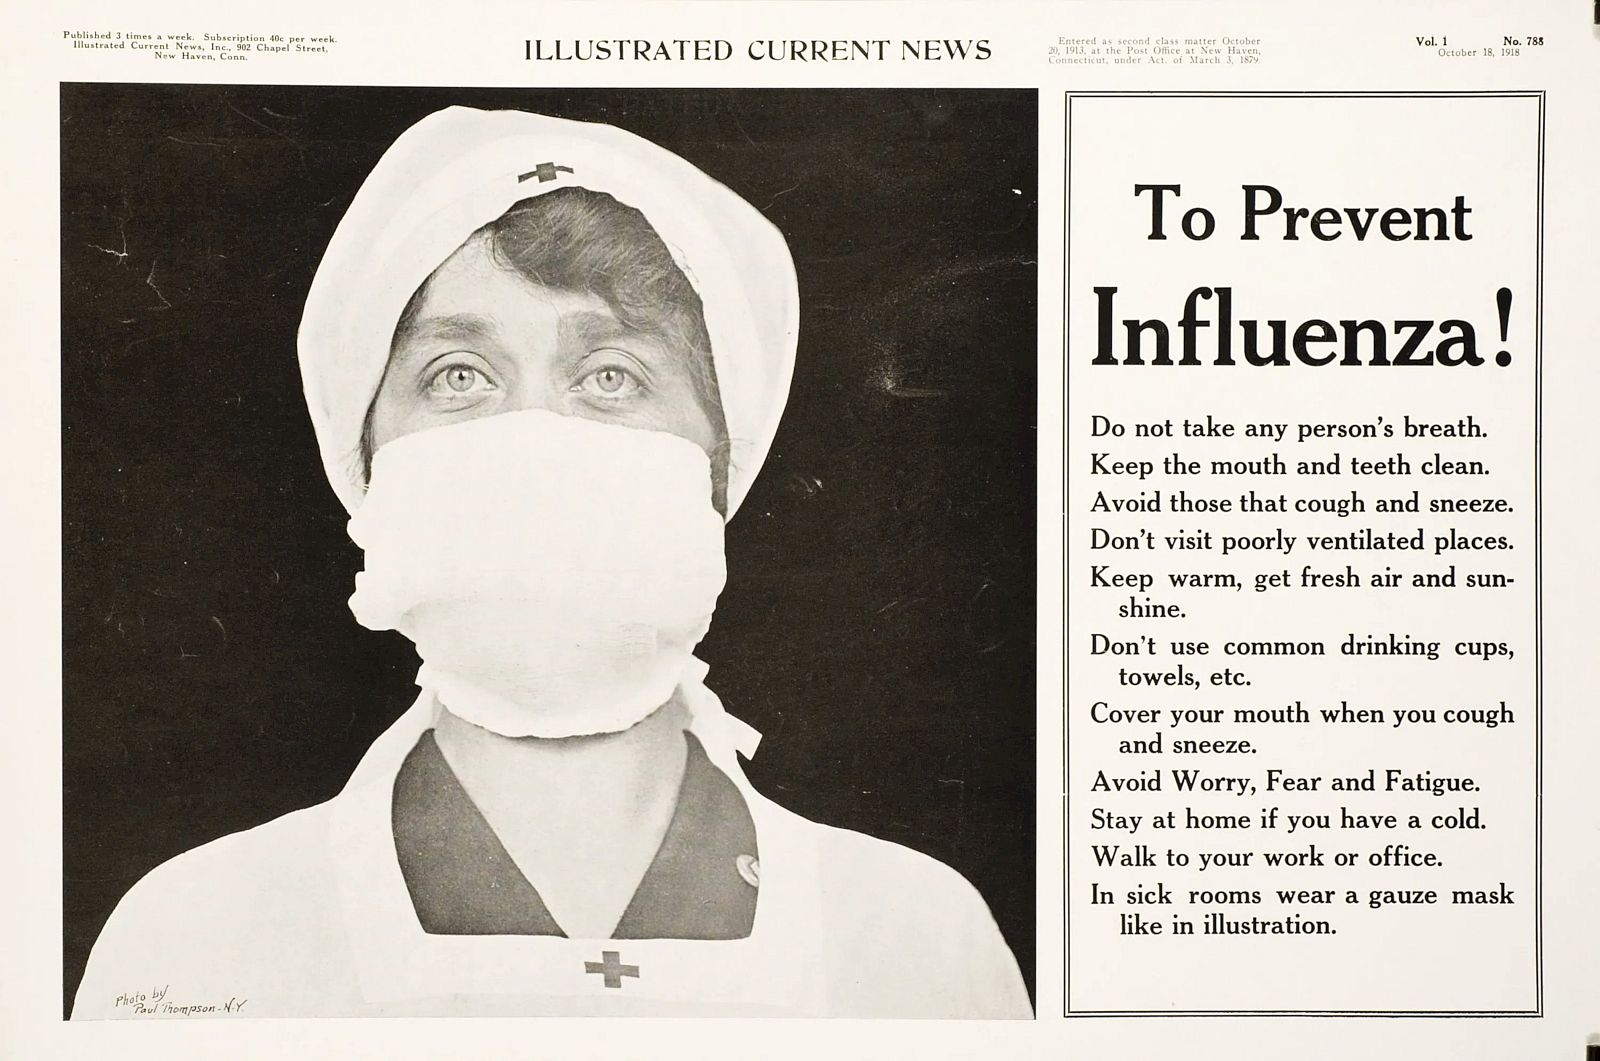 O real motivo da exigência de máscara na pandemia